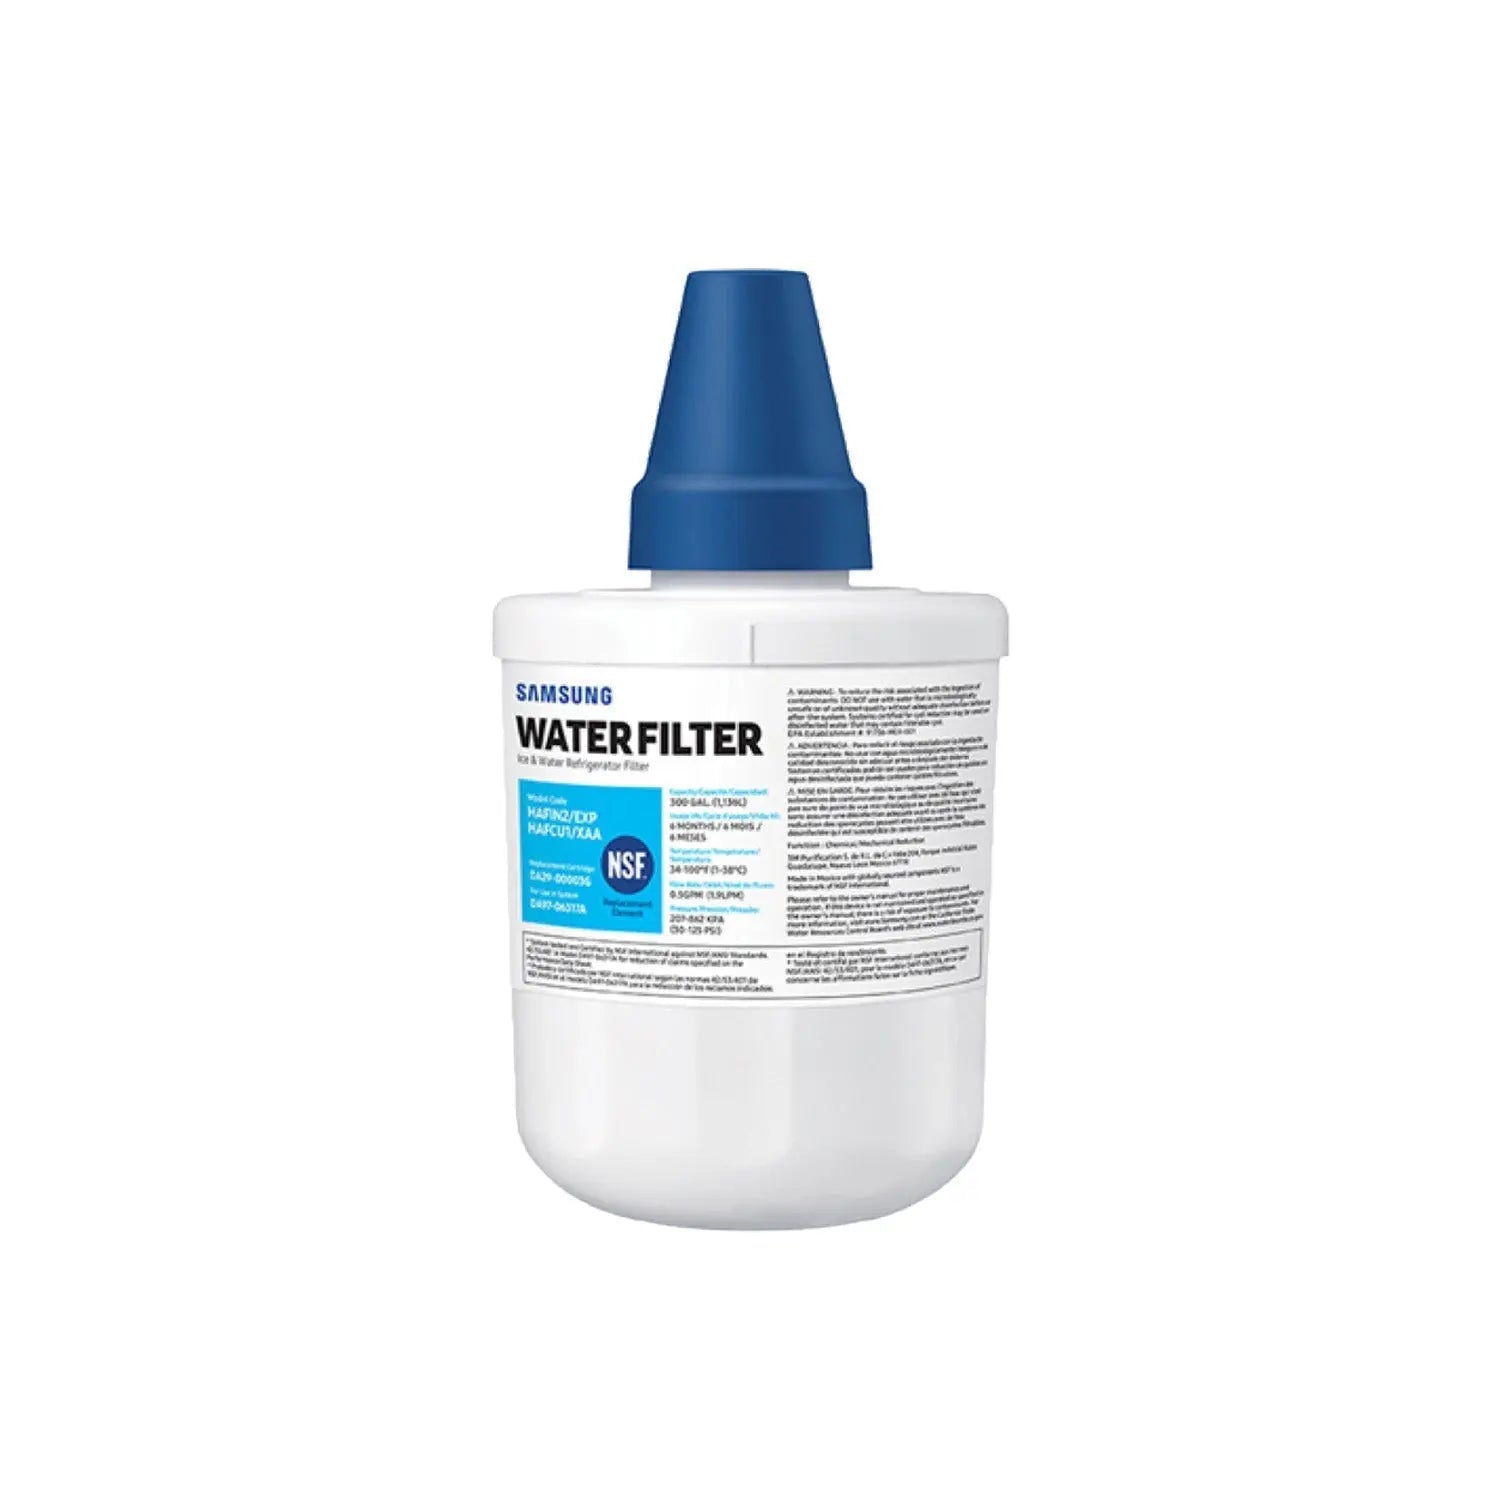 SAMSUNG Genuine HAF-CU1 Refrigerator Water Filter (DA29-00003G), White.